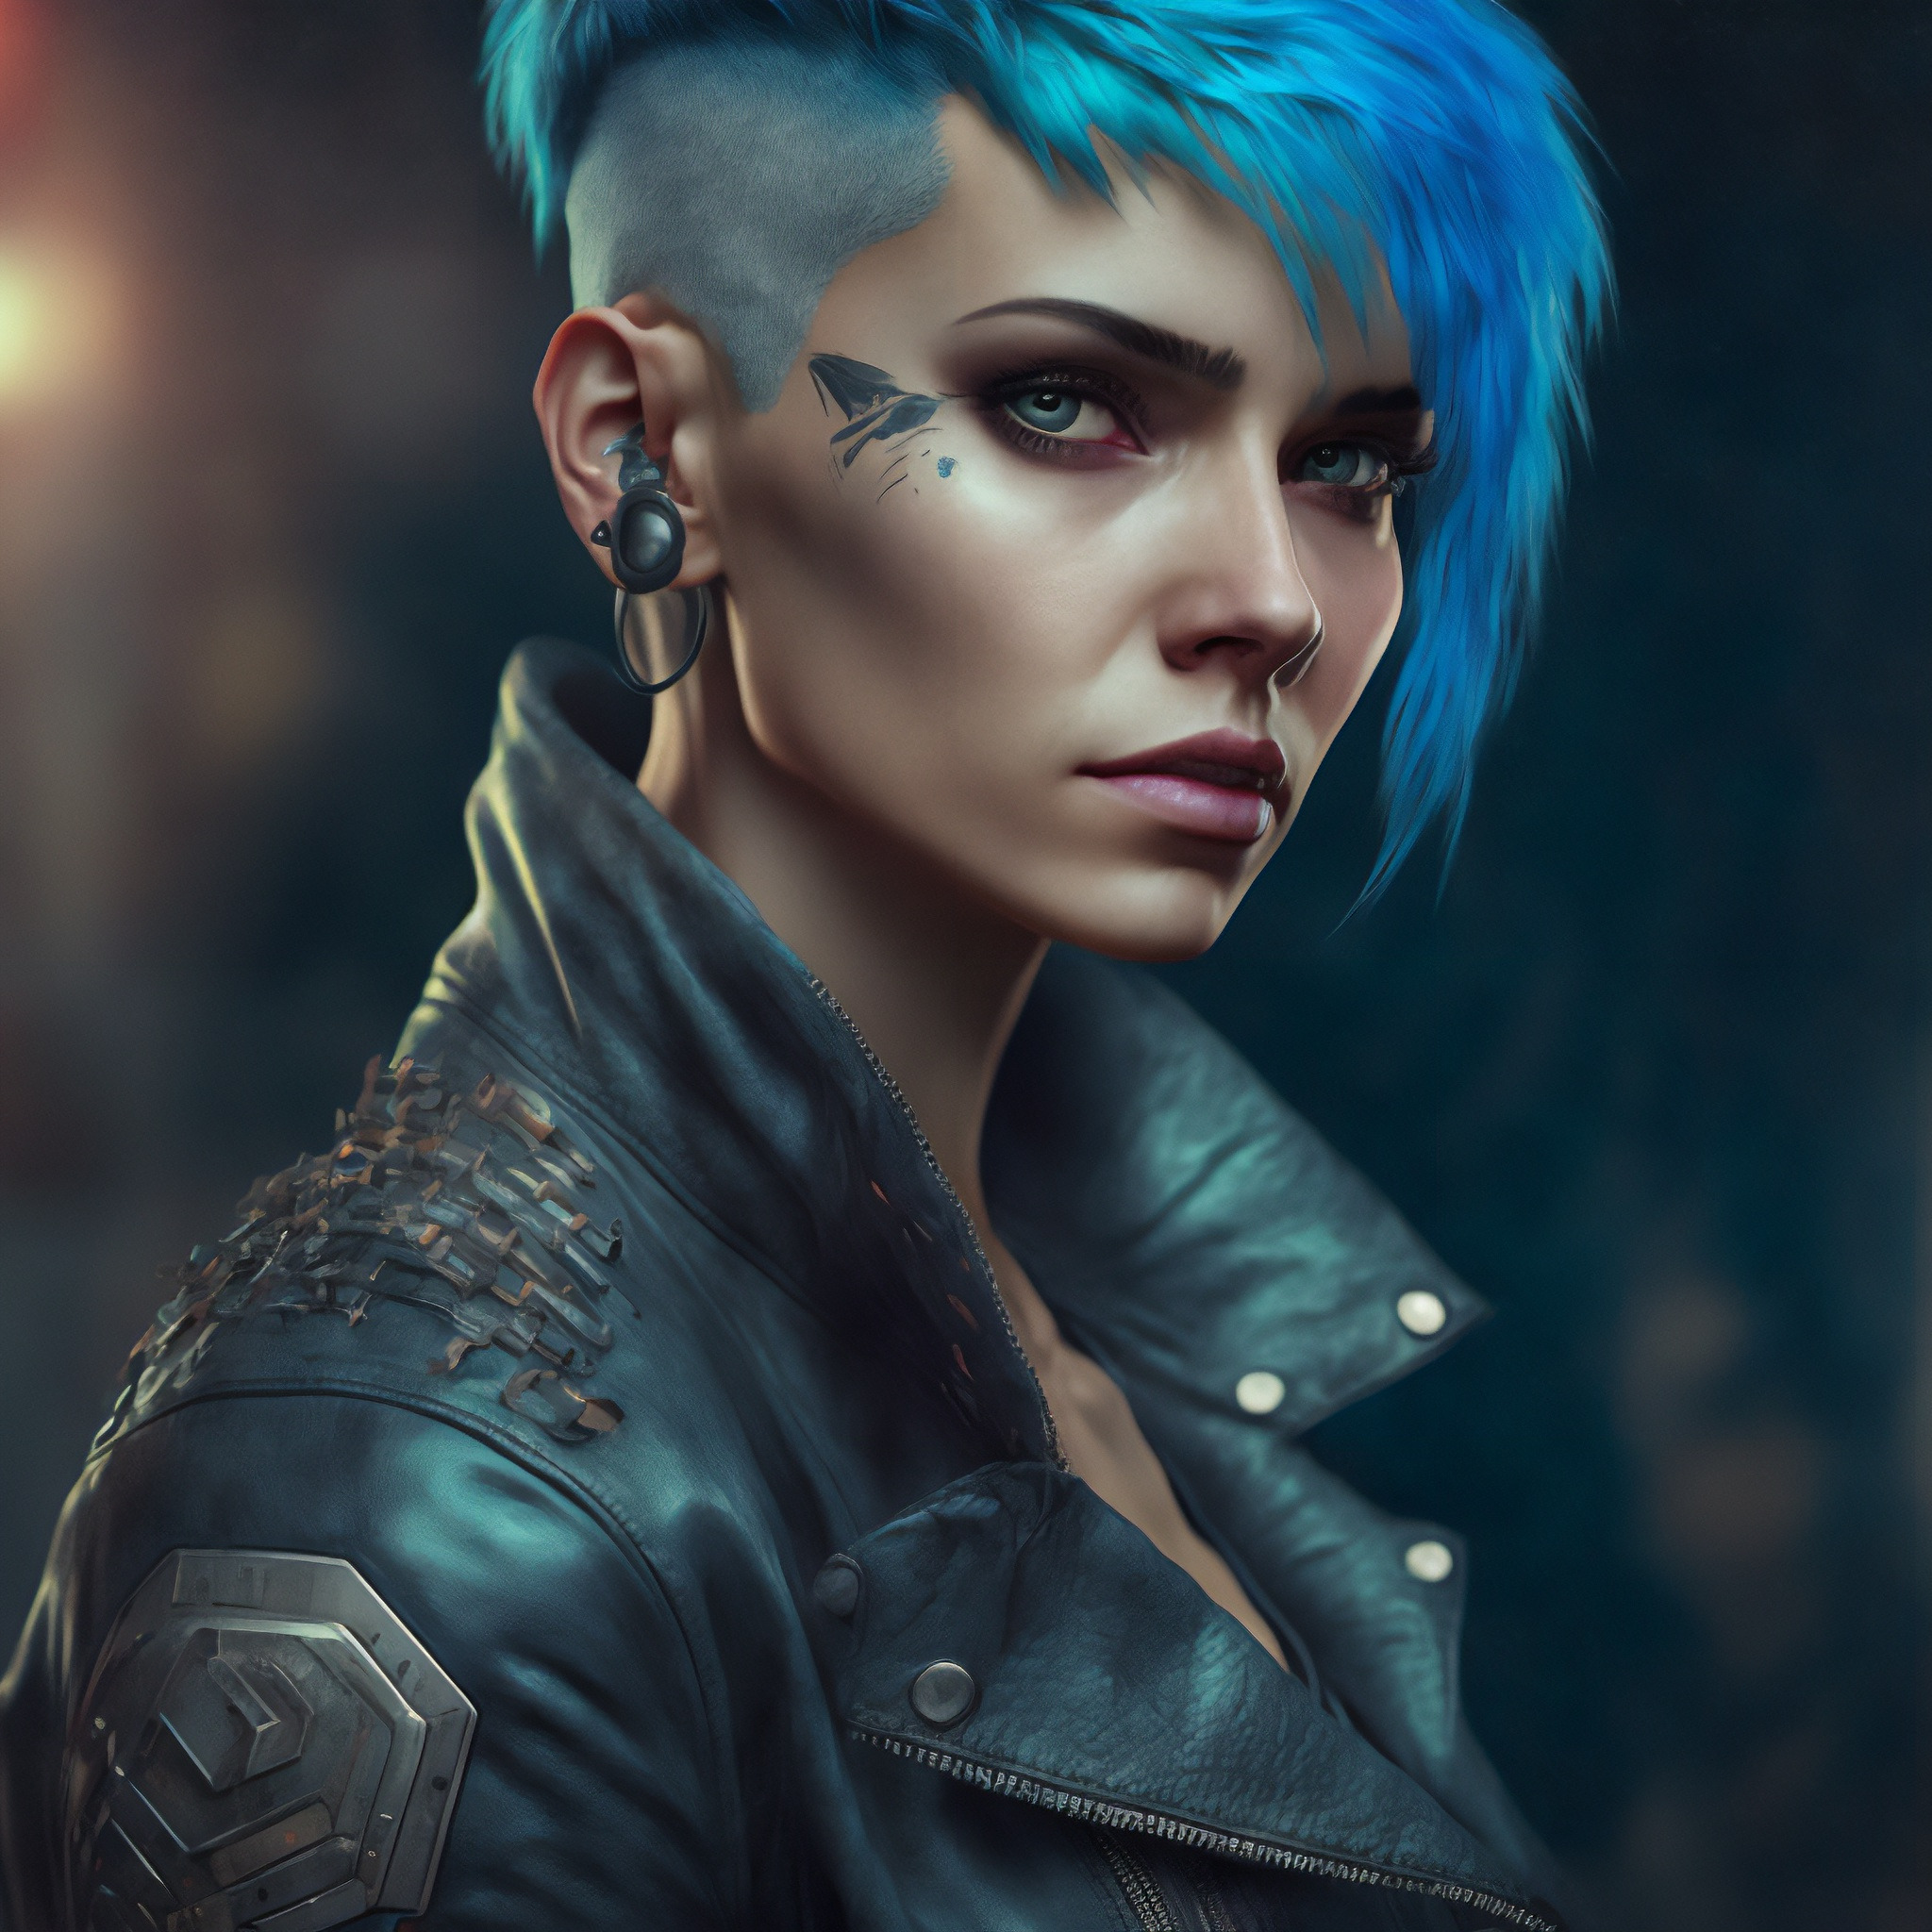 Cyberpunk girl hair